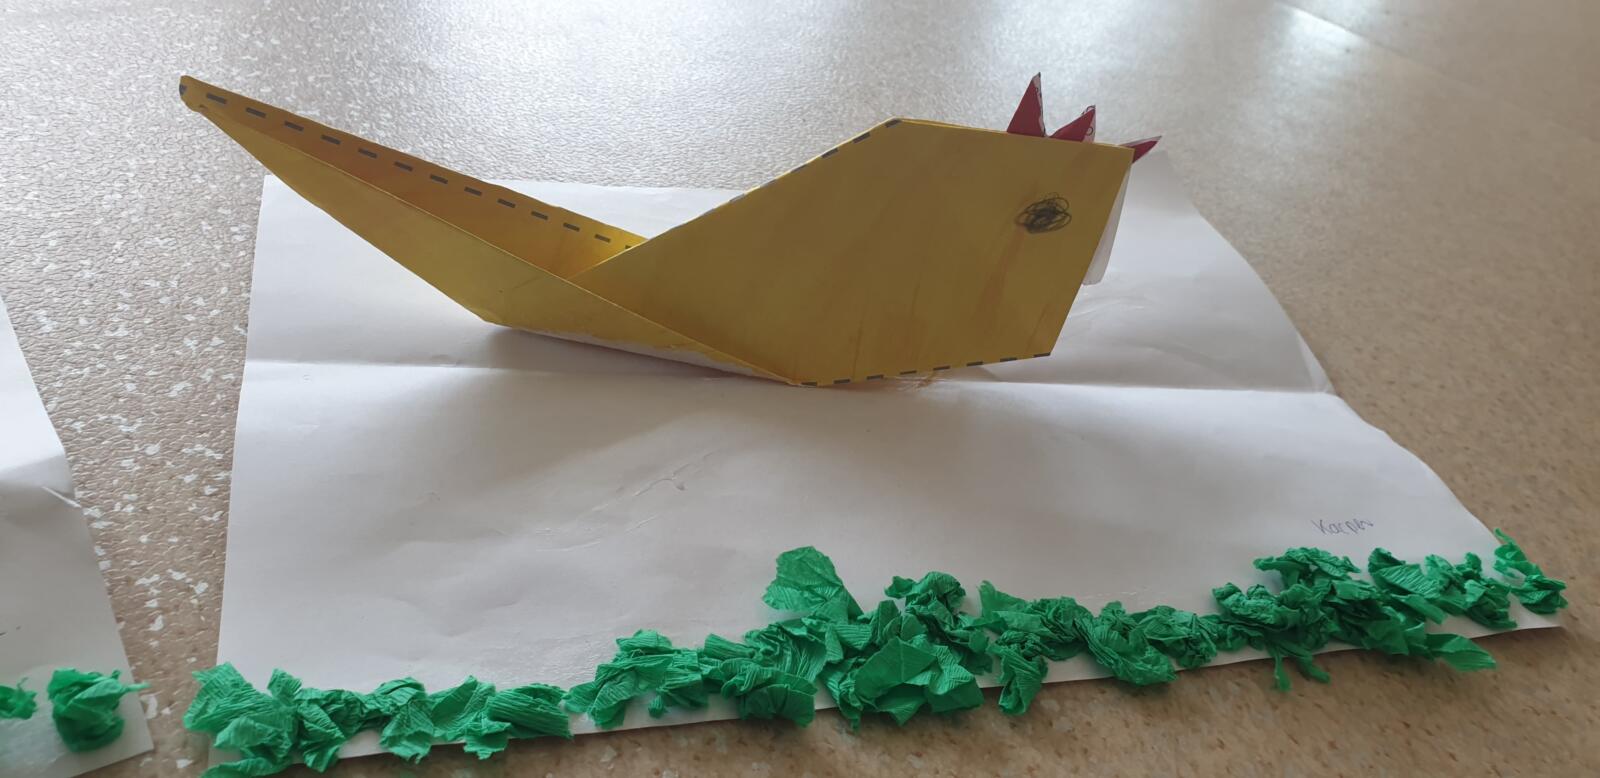 Zdjęcie przedstawia gotową pracę plastyczna jednego z przedszkolaków. Jest to żółta, papierowa kurka, przyklejona do białej kartki papieru ozdobionej zielonymi kuleczkami z krepy symbolizującej trawę.